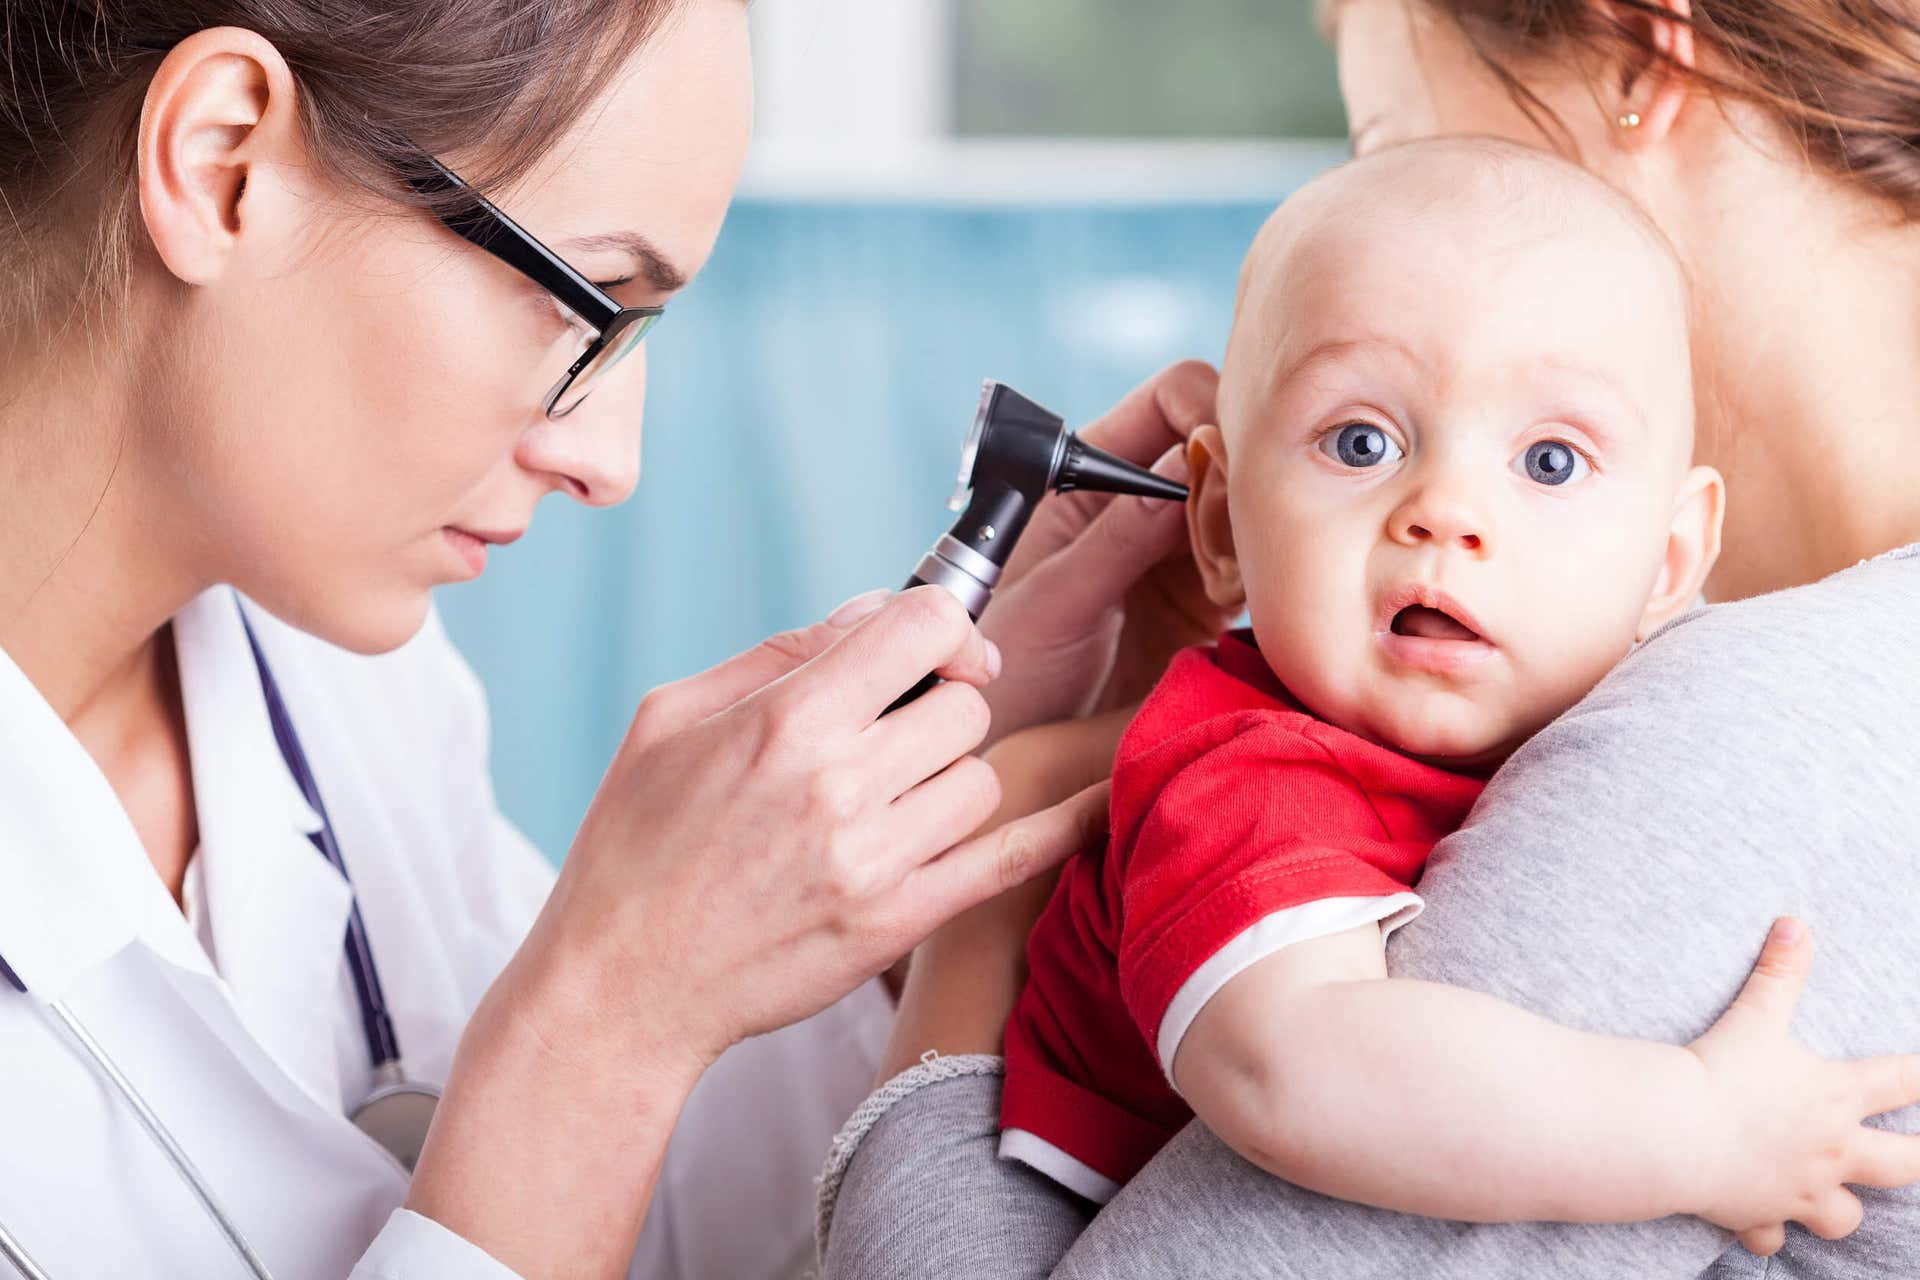 La infección de oído del bebé requiere diagnóstico